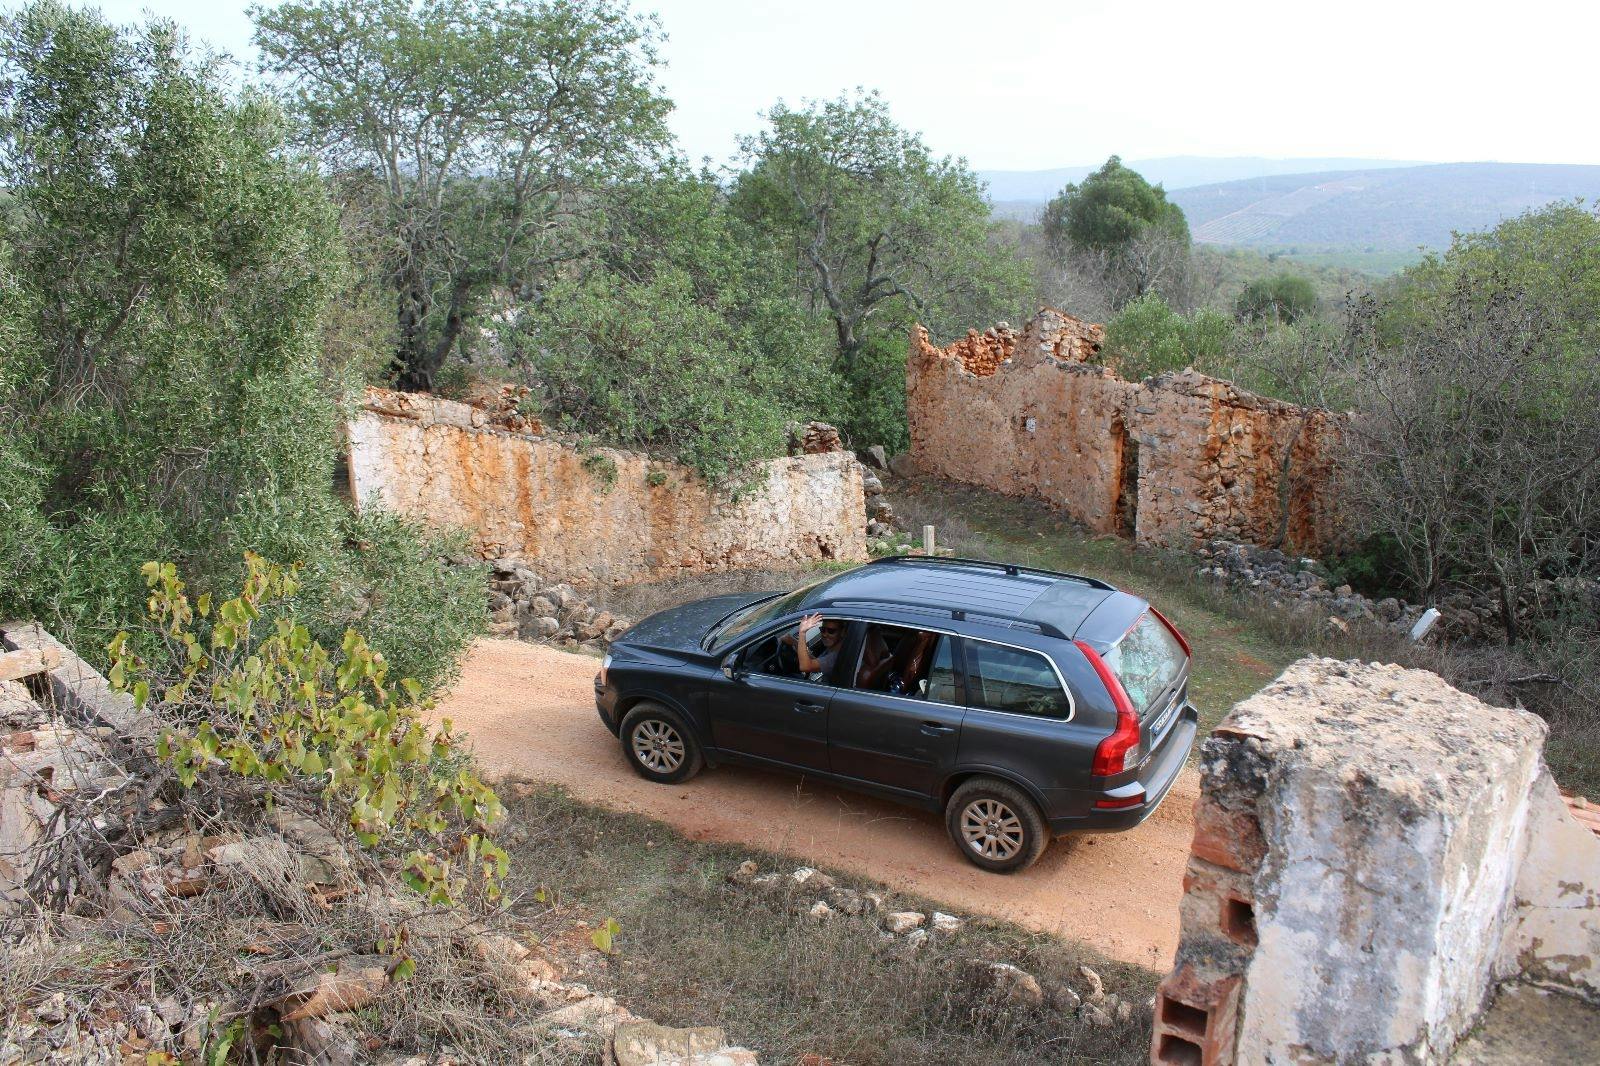 Privates Entdeckungserlebnis im Geländewagen im Hinterland der Algarve